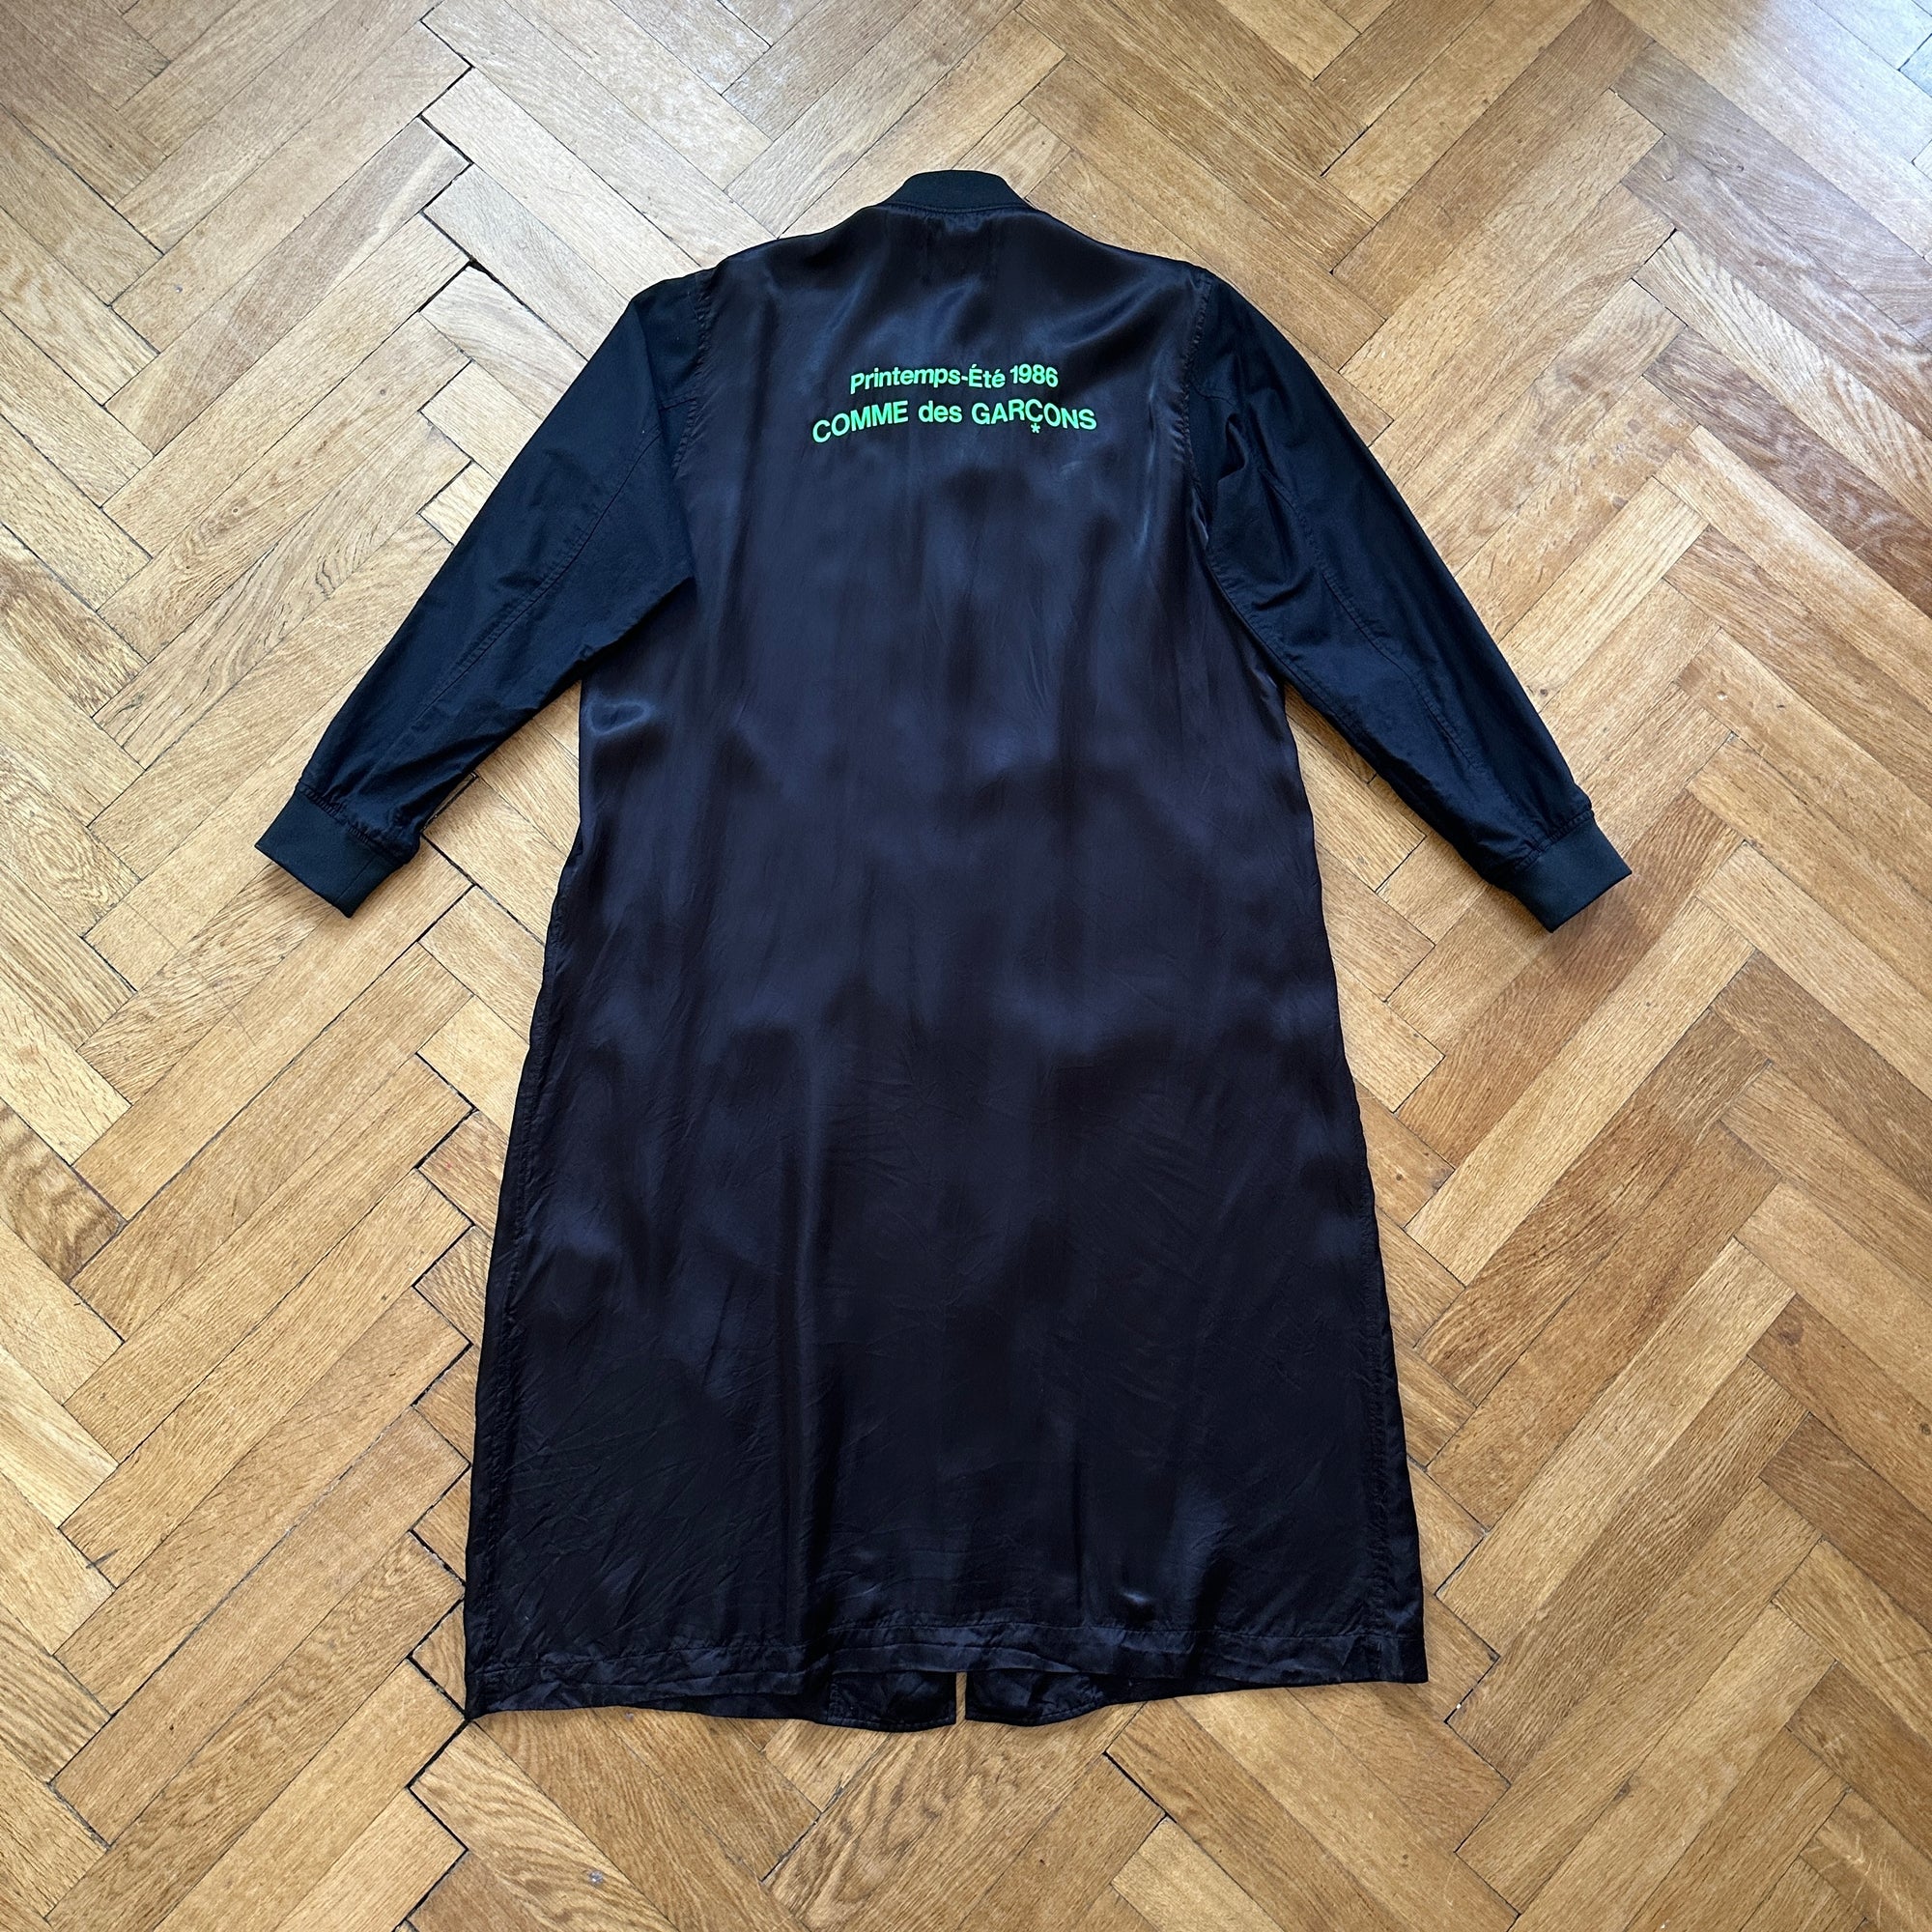 Comme des Garçons 2018 "1986" Oversized Staff Coat